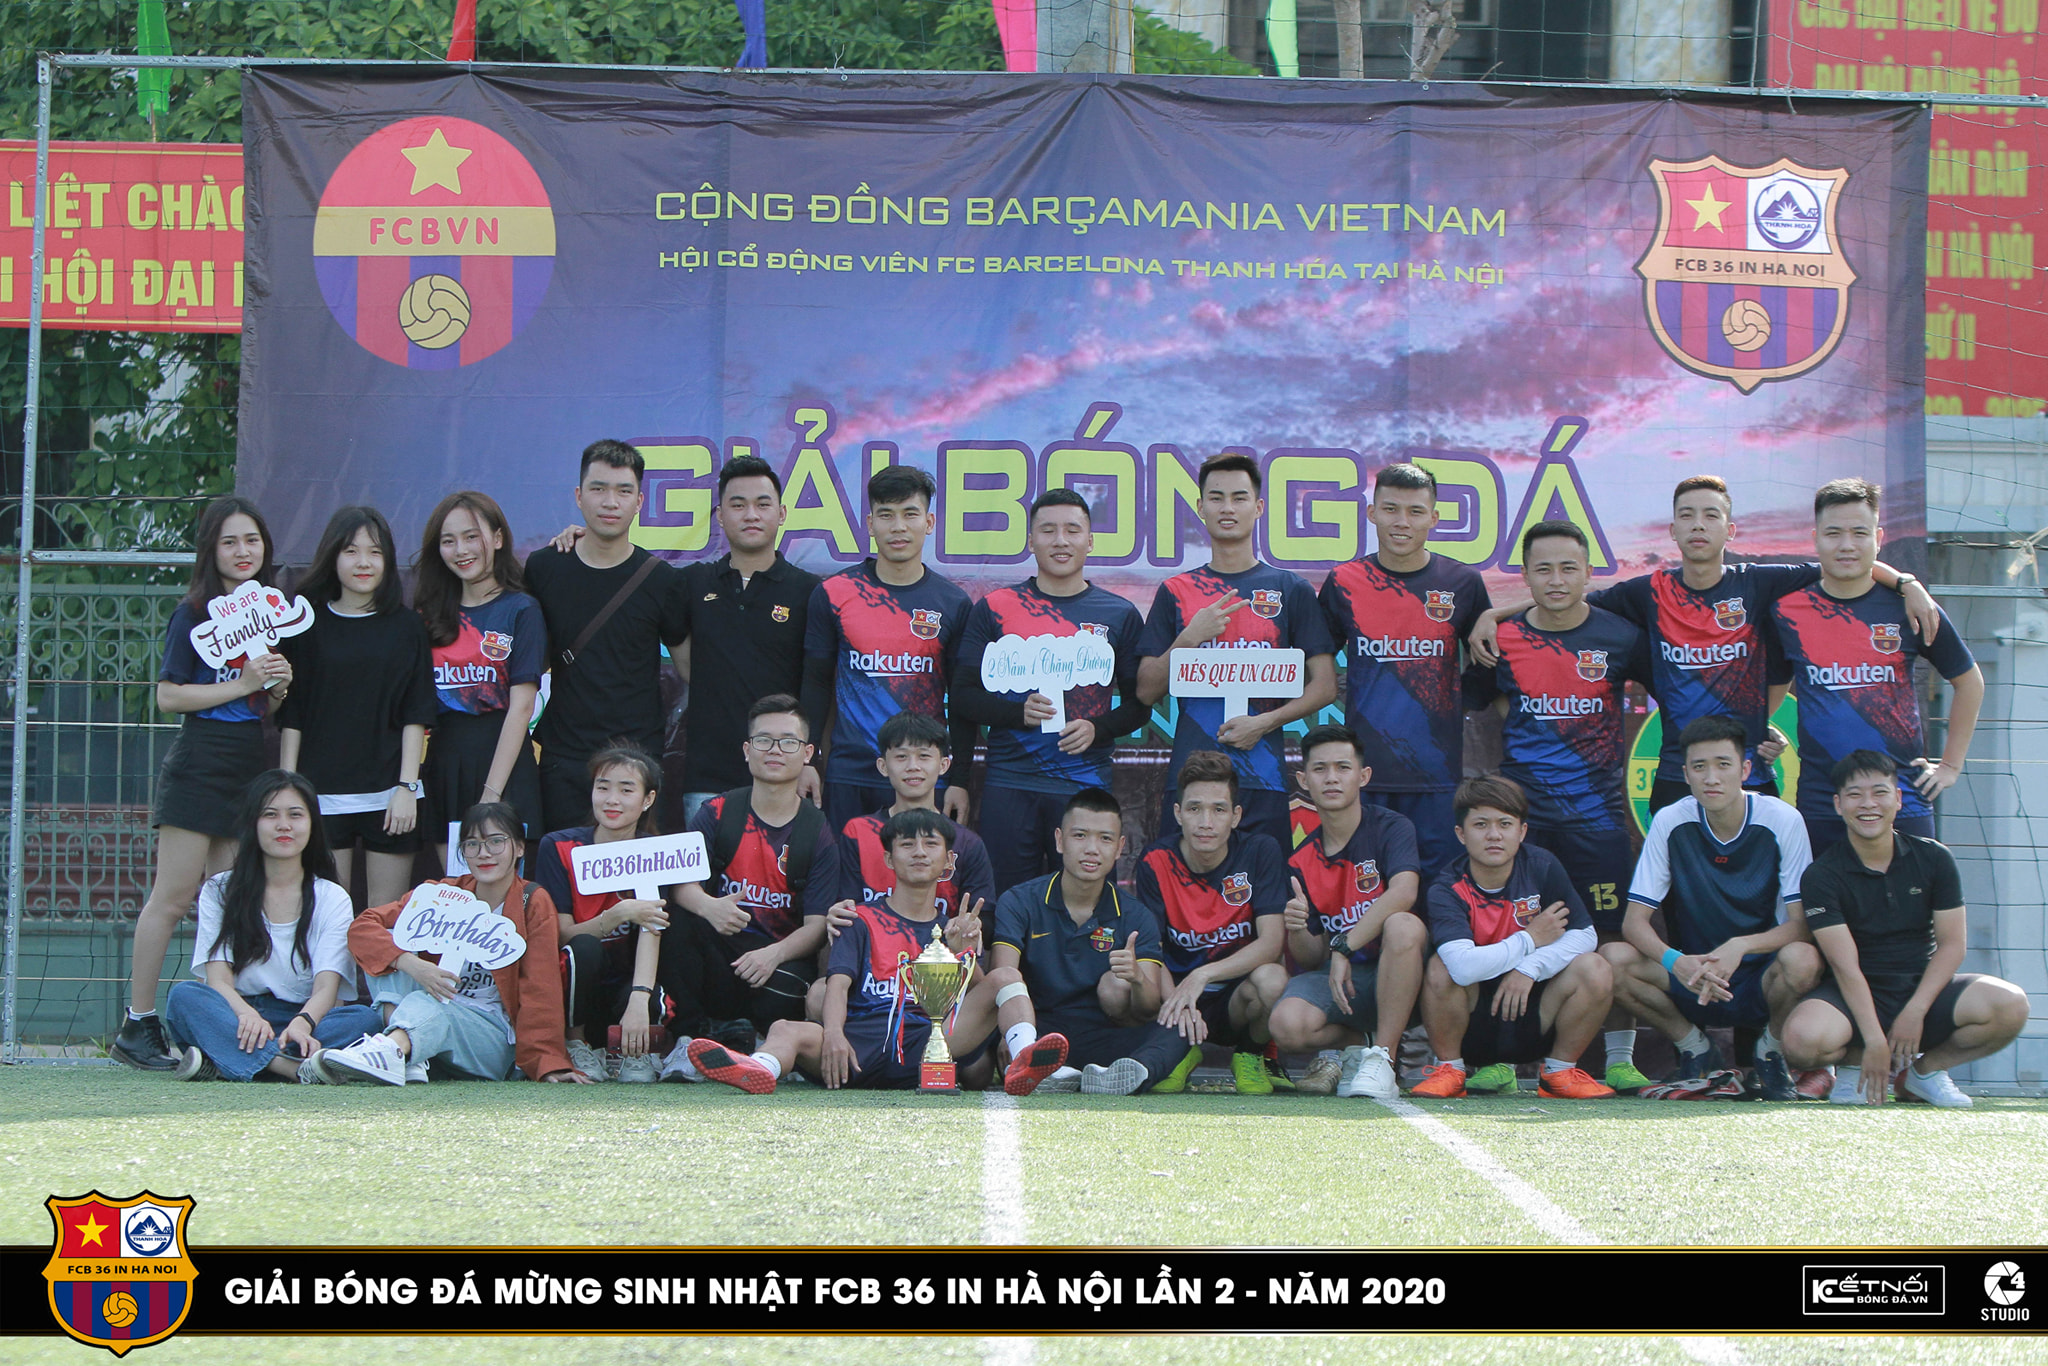 Kỷ niệm sinh nhật 2 tuổi của FCB 36 in Hà Nội